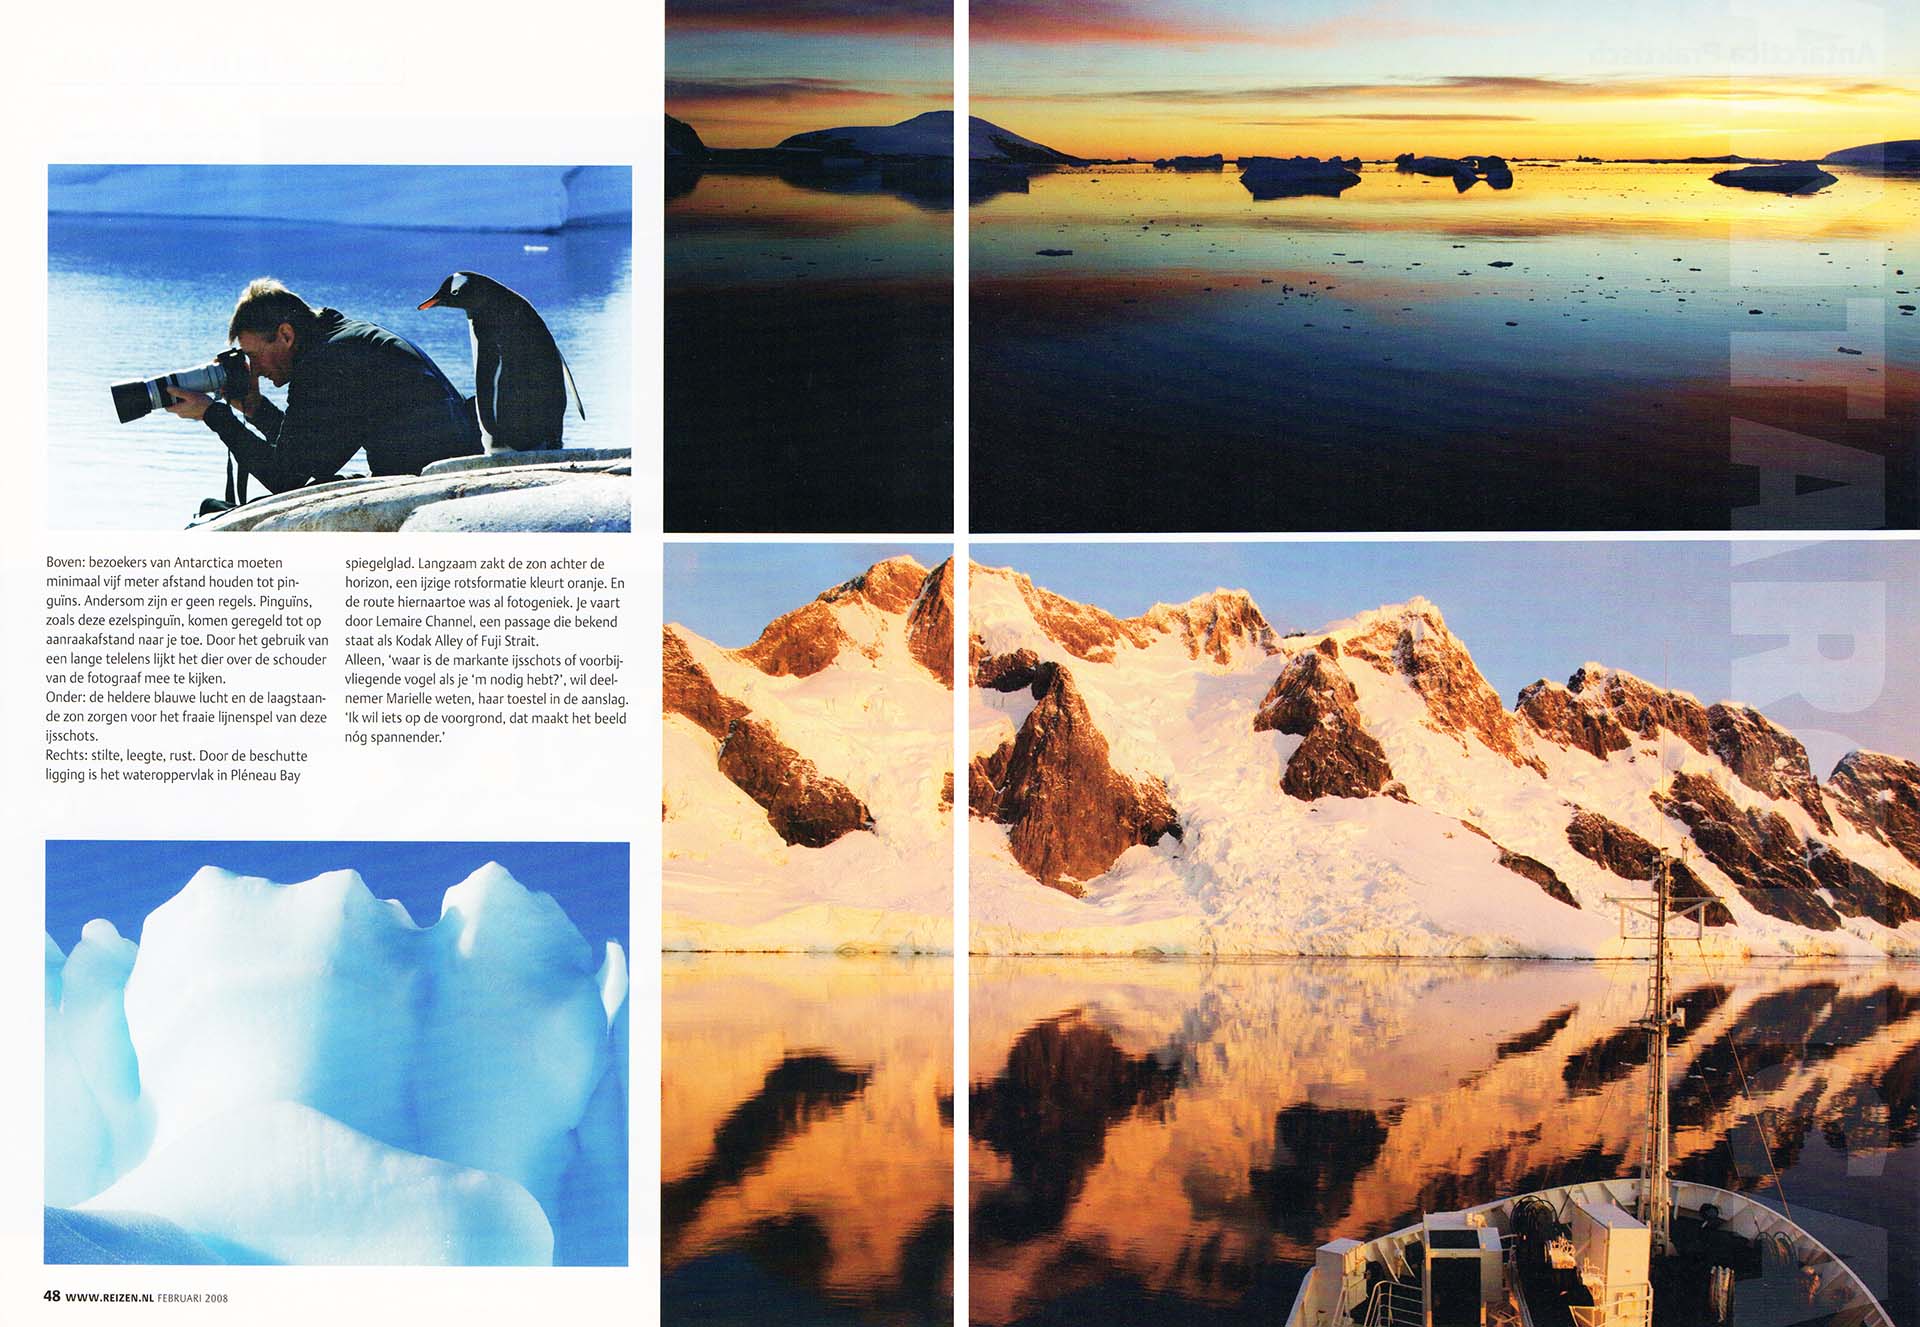 Een pagina uit een publicatie over een lezeresreis. Met foto's van een fotograaf met ezelspinguïn, ijsschots en Pleneau Bay.